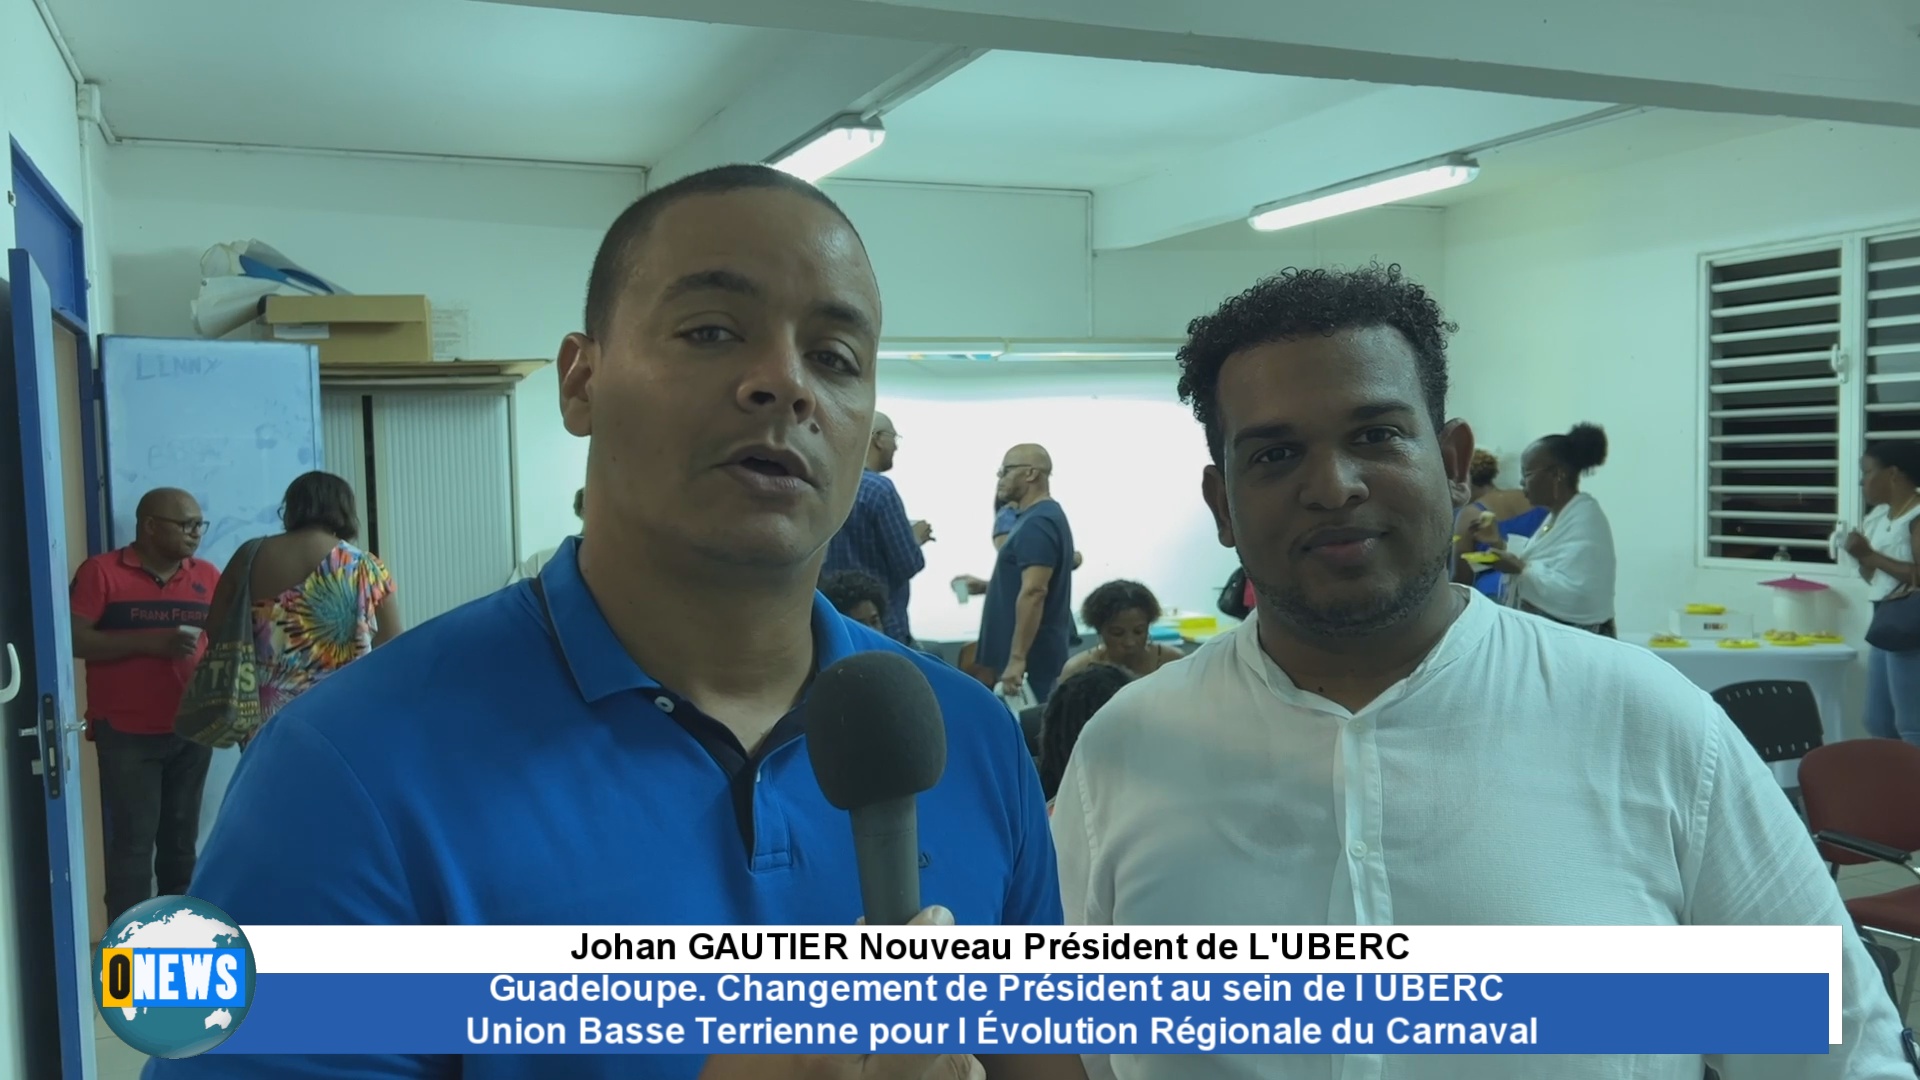 [Vidéo]Onews Guadeloupe. Changement de Président au sein de l UBERC  Union Basse Terrienne pour l Évolution Régionale du Carnaval